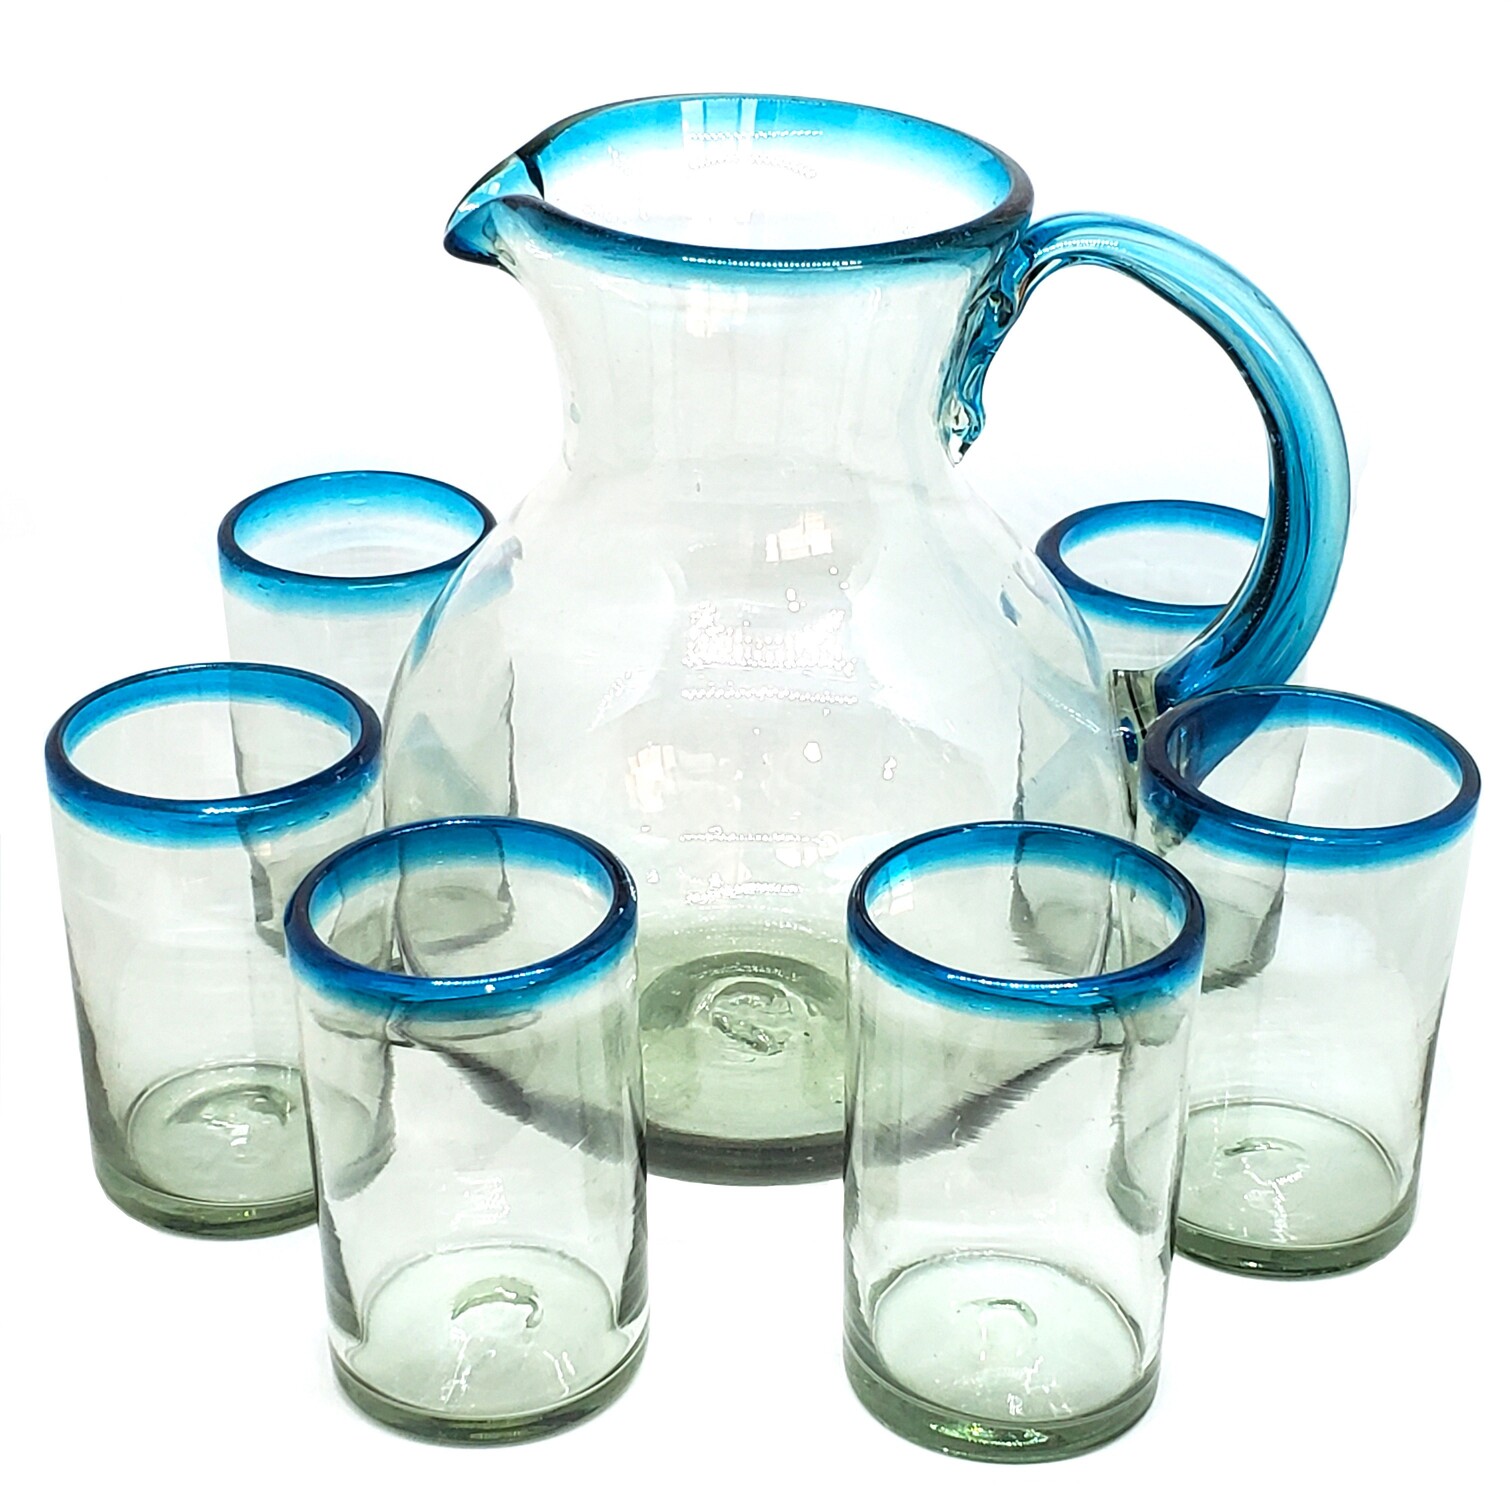 VIDRIO SOPLADO / Juego de jarra y 6 vasos grandes con borde azul aqua